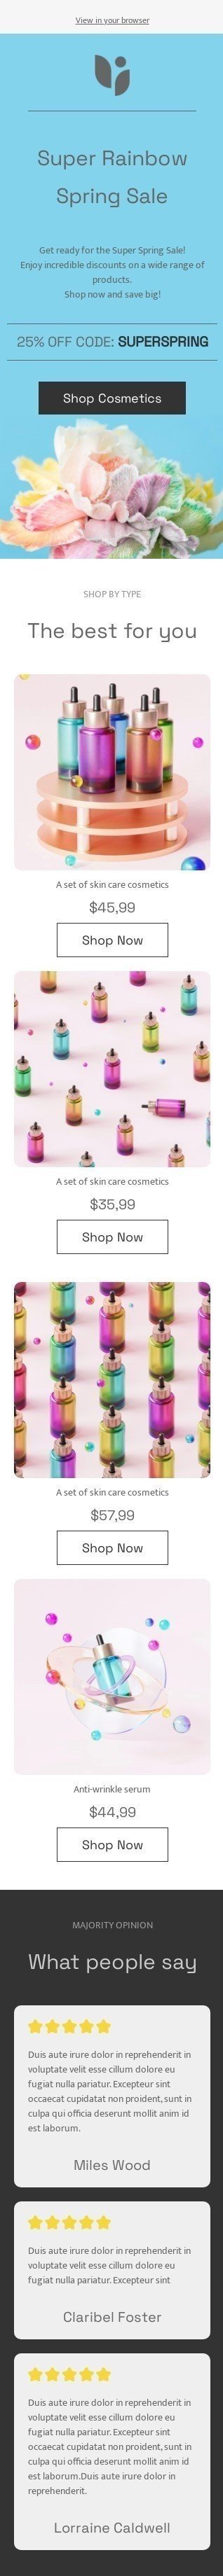 Plantilla de correo electrónico «Súper arcoiris» de primavera para la industria de belleza y cuidado personal Vista de móvil